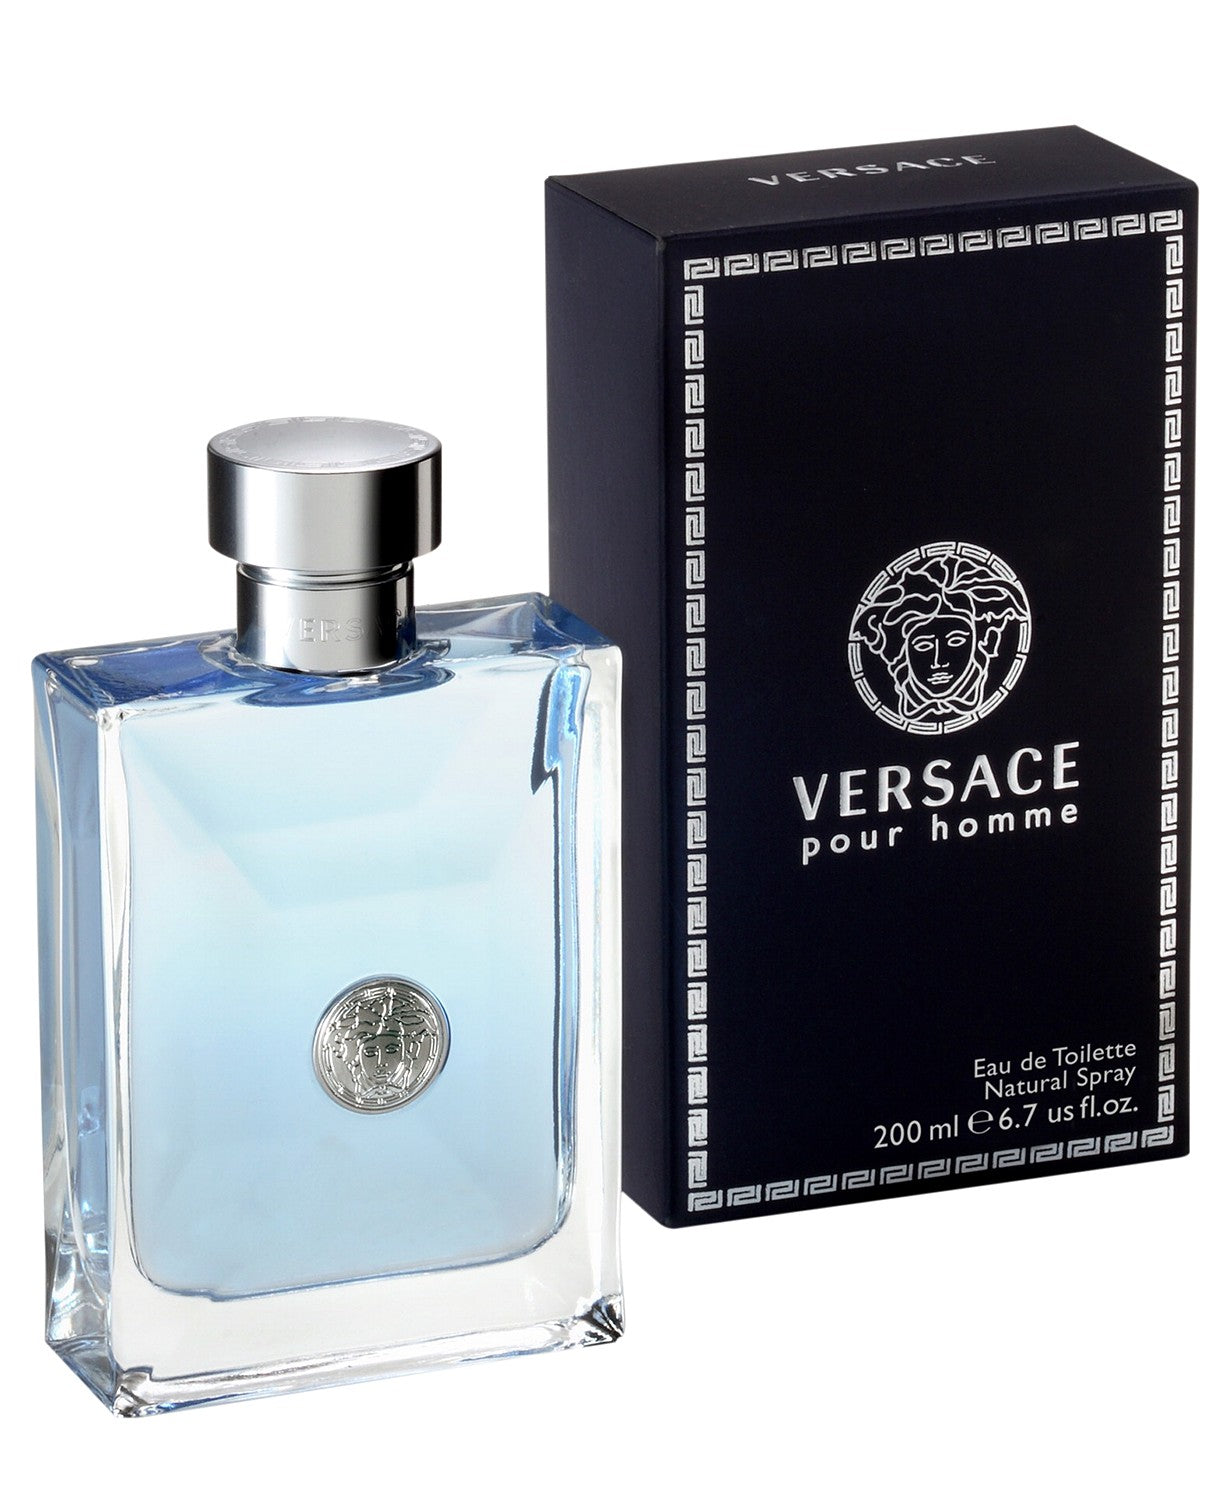 Versace Men's Pour Homme Eau de Toilette Spray, 6.7 oz. – Rafaelos